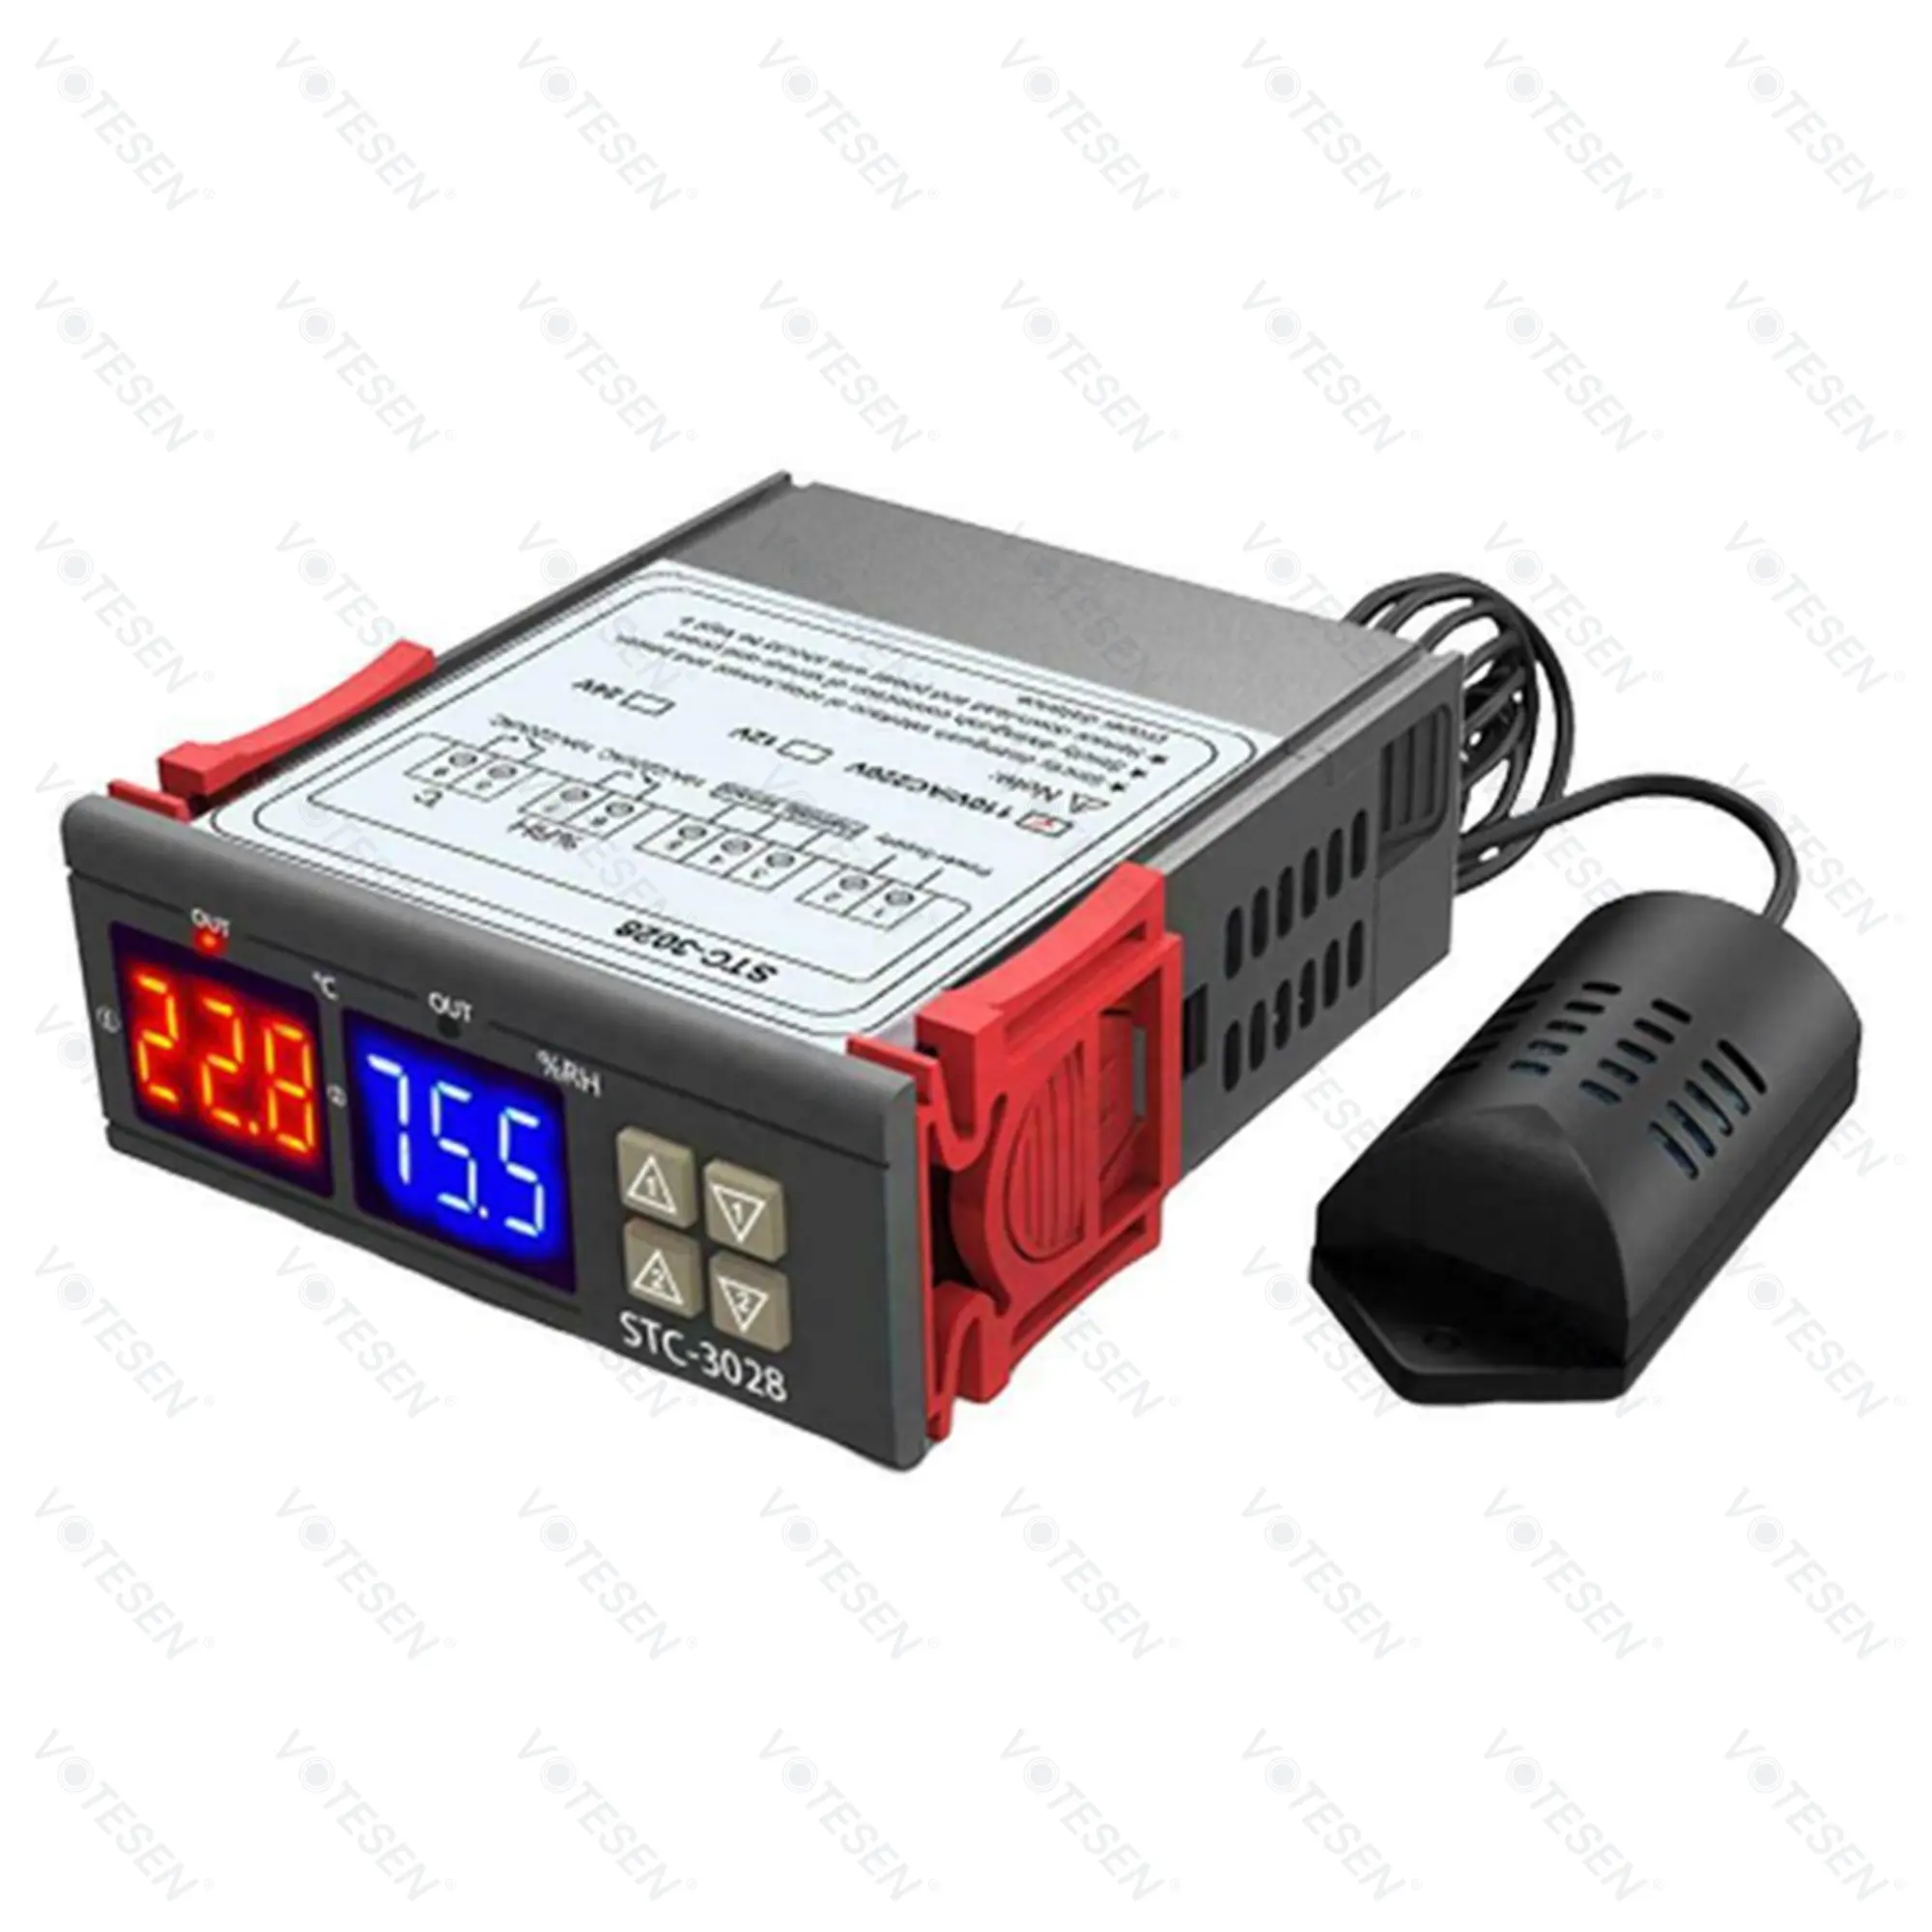 STC-3028 Digital controlador de temperatura de humedad LED Dual AC110-220V